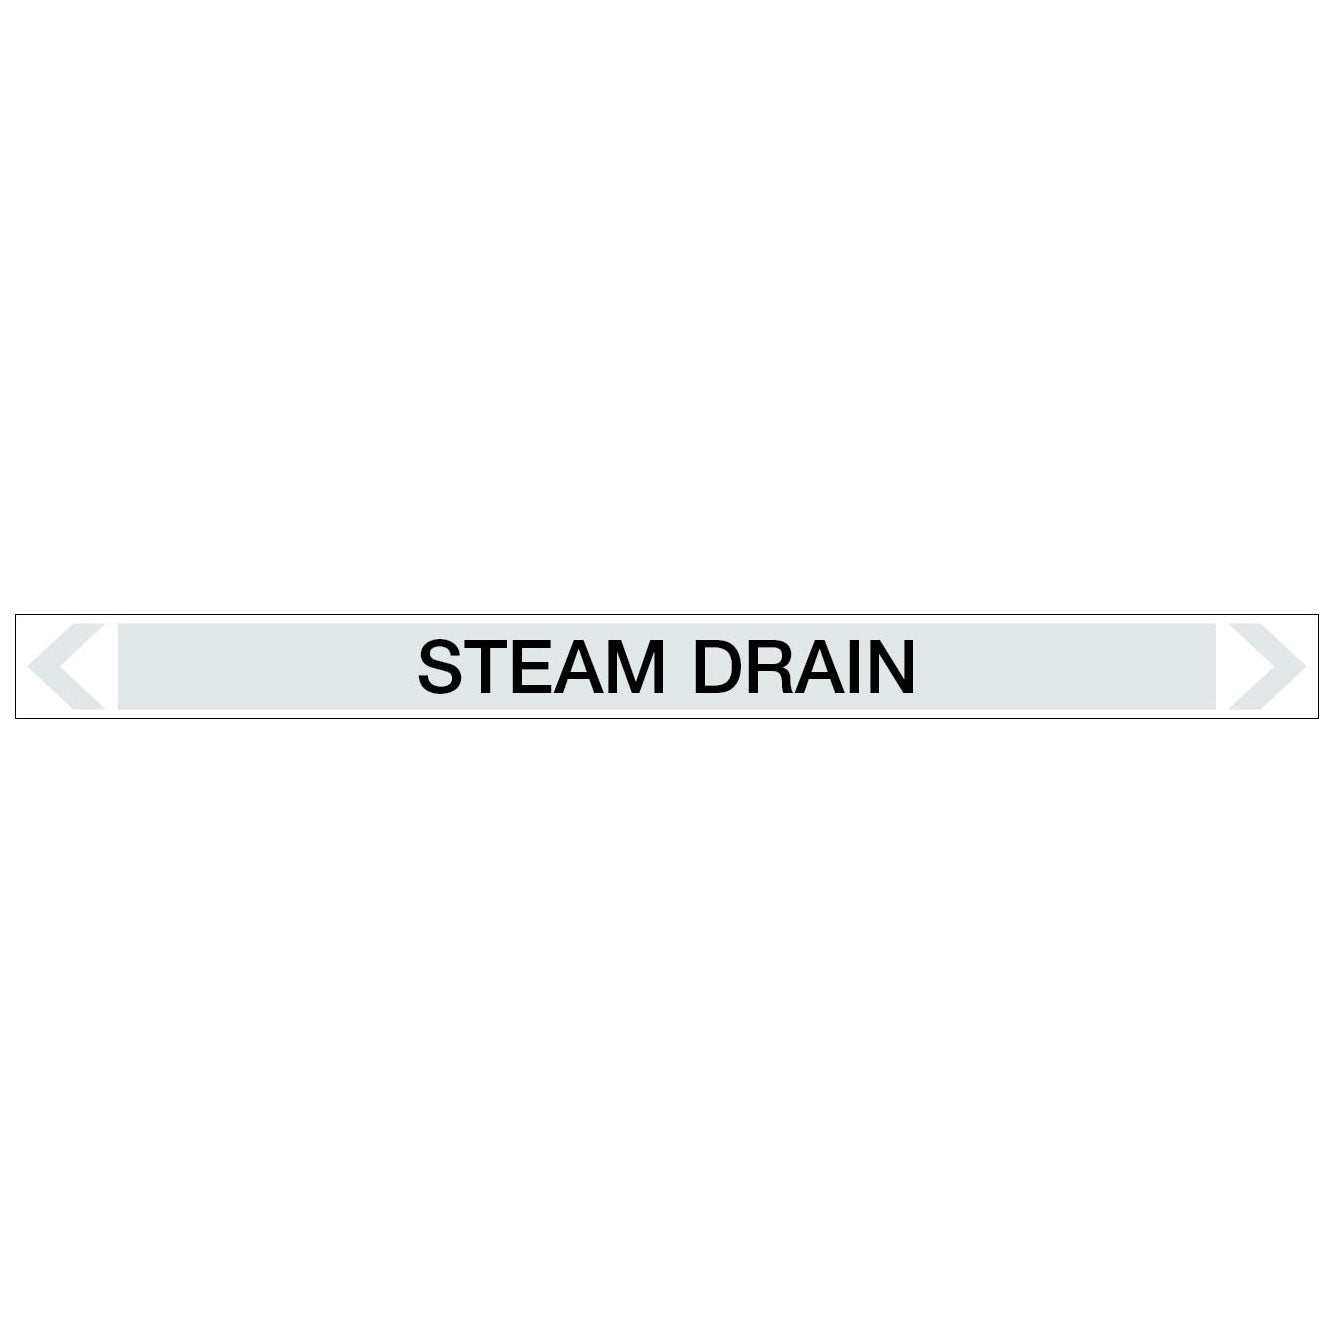 Steam - Steam Drain - Pipe Marker Sticker